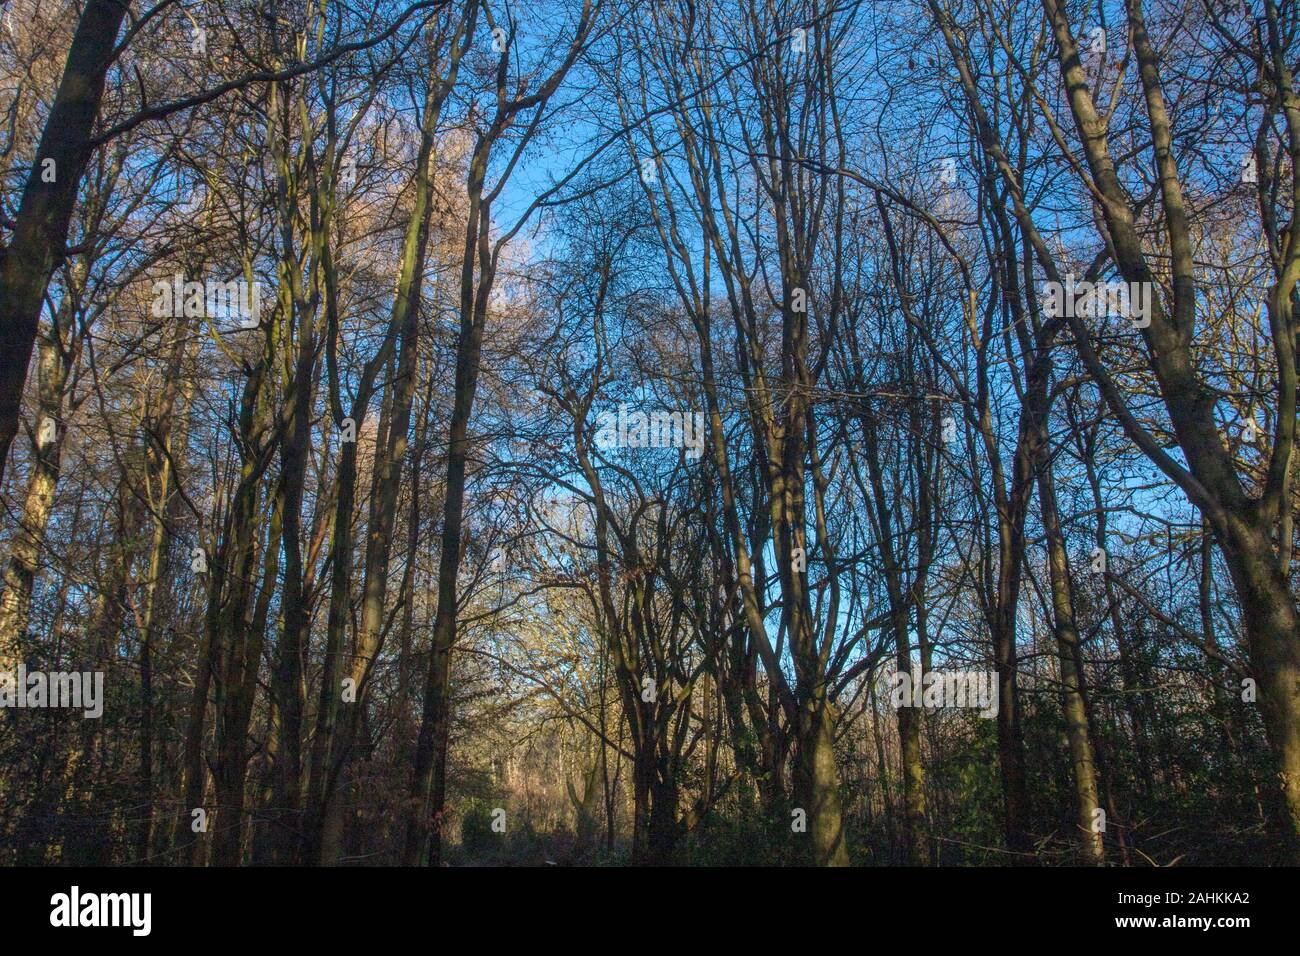 Woodland invernale con cielo blu che si affaccia attraverso gli alberi scheletrici, ritratto naturale ambientale Foto Stock